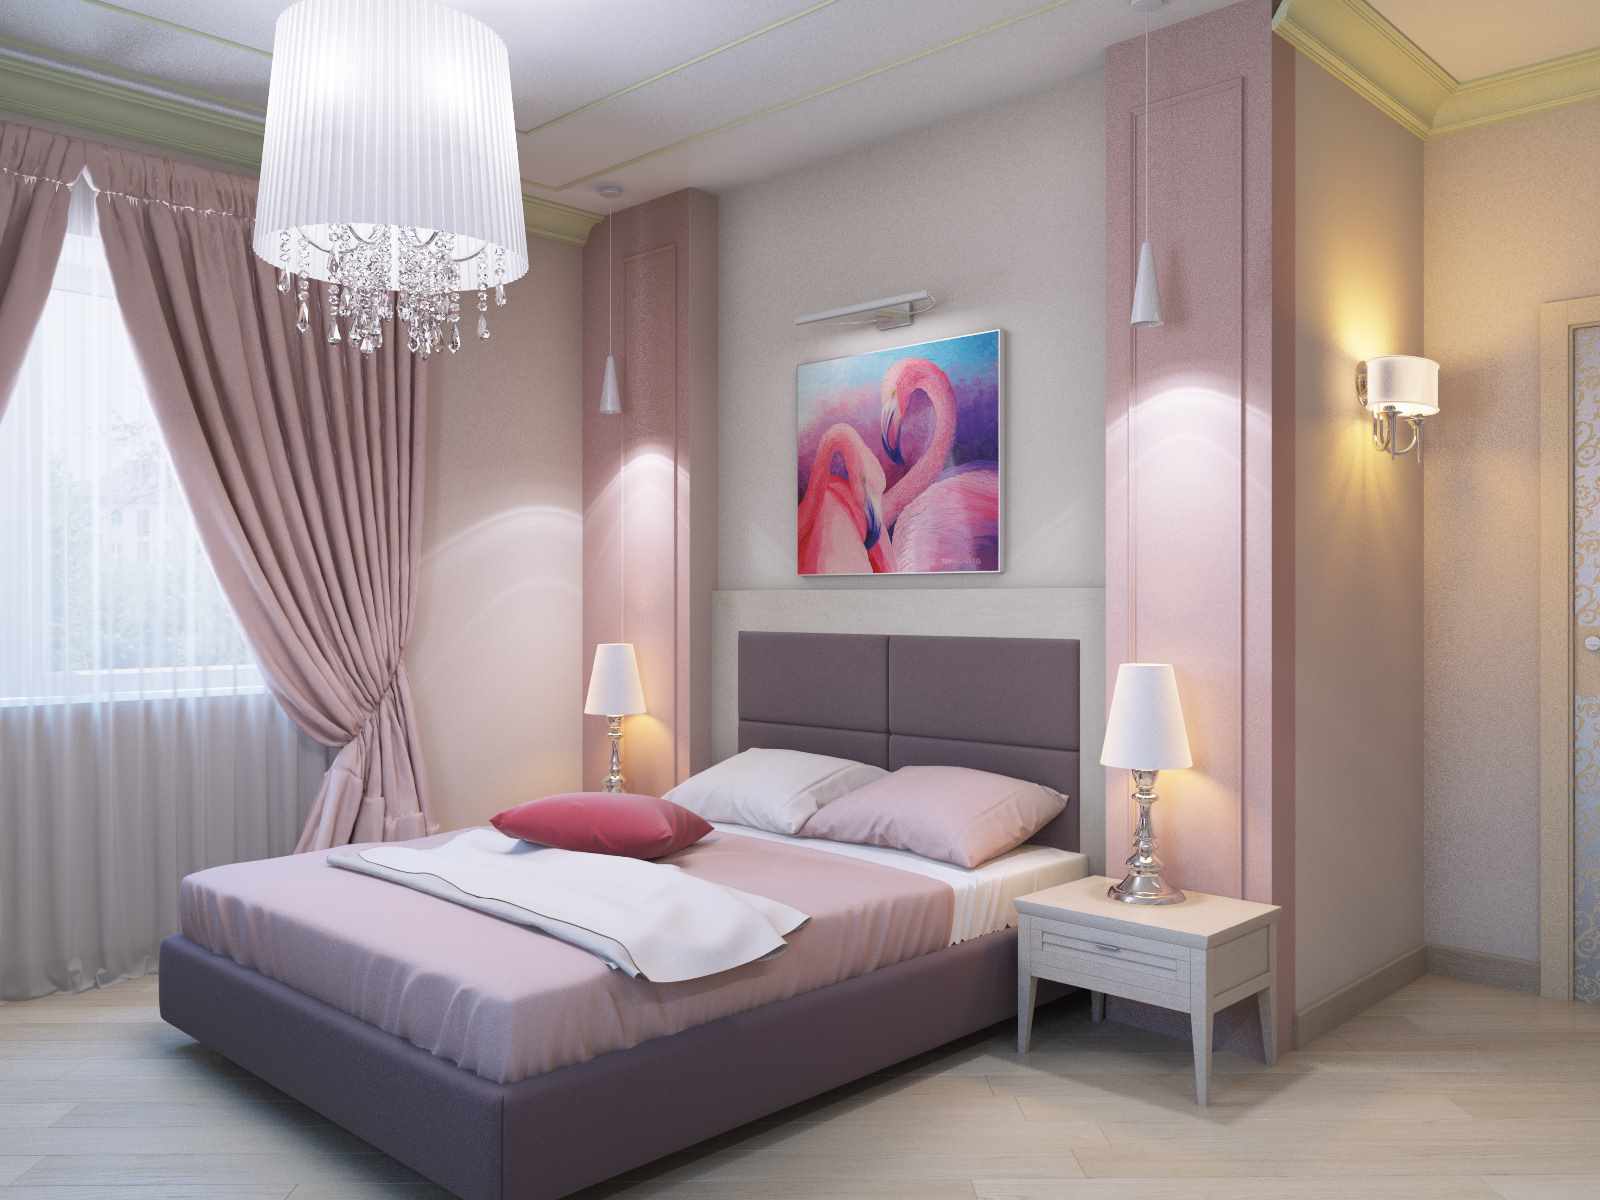 Пример за ярка декорация на стила на стените в спалнята